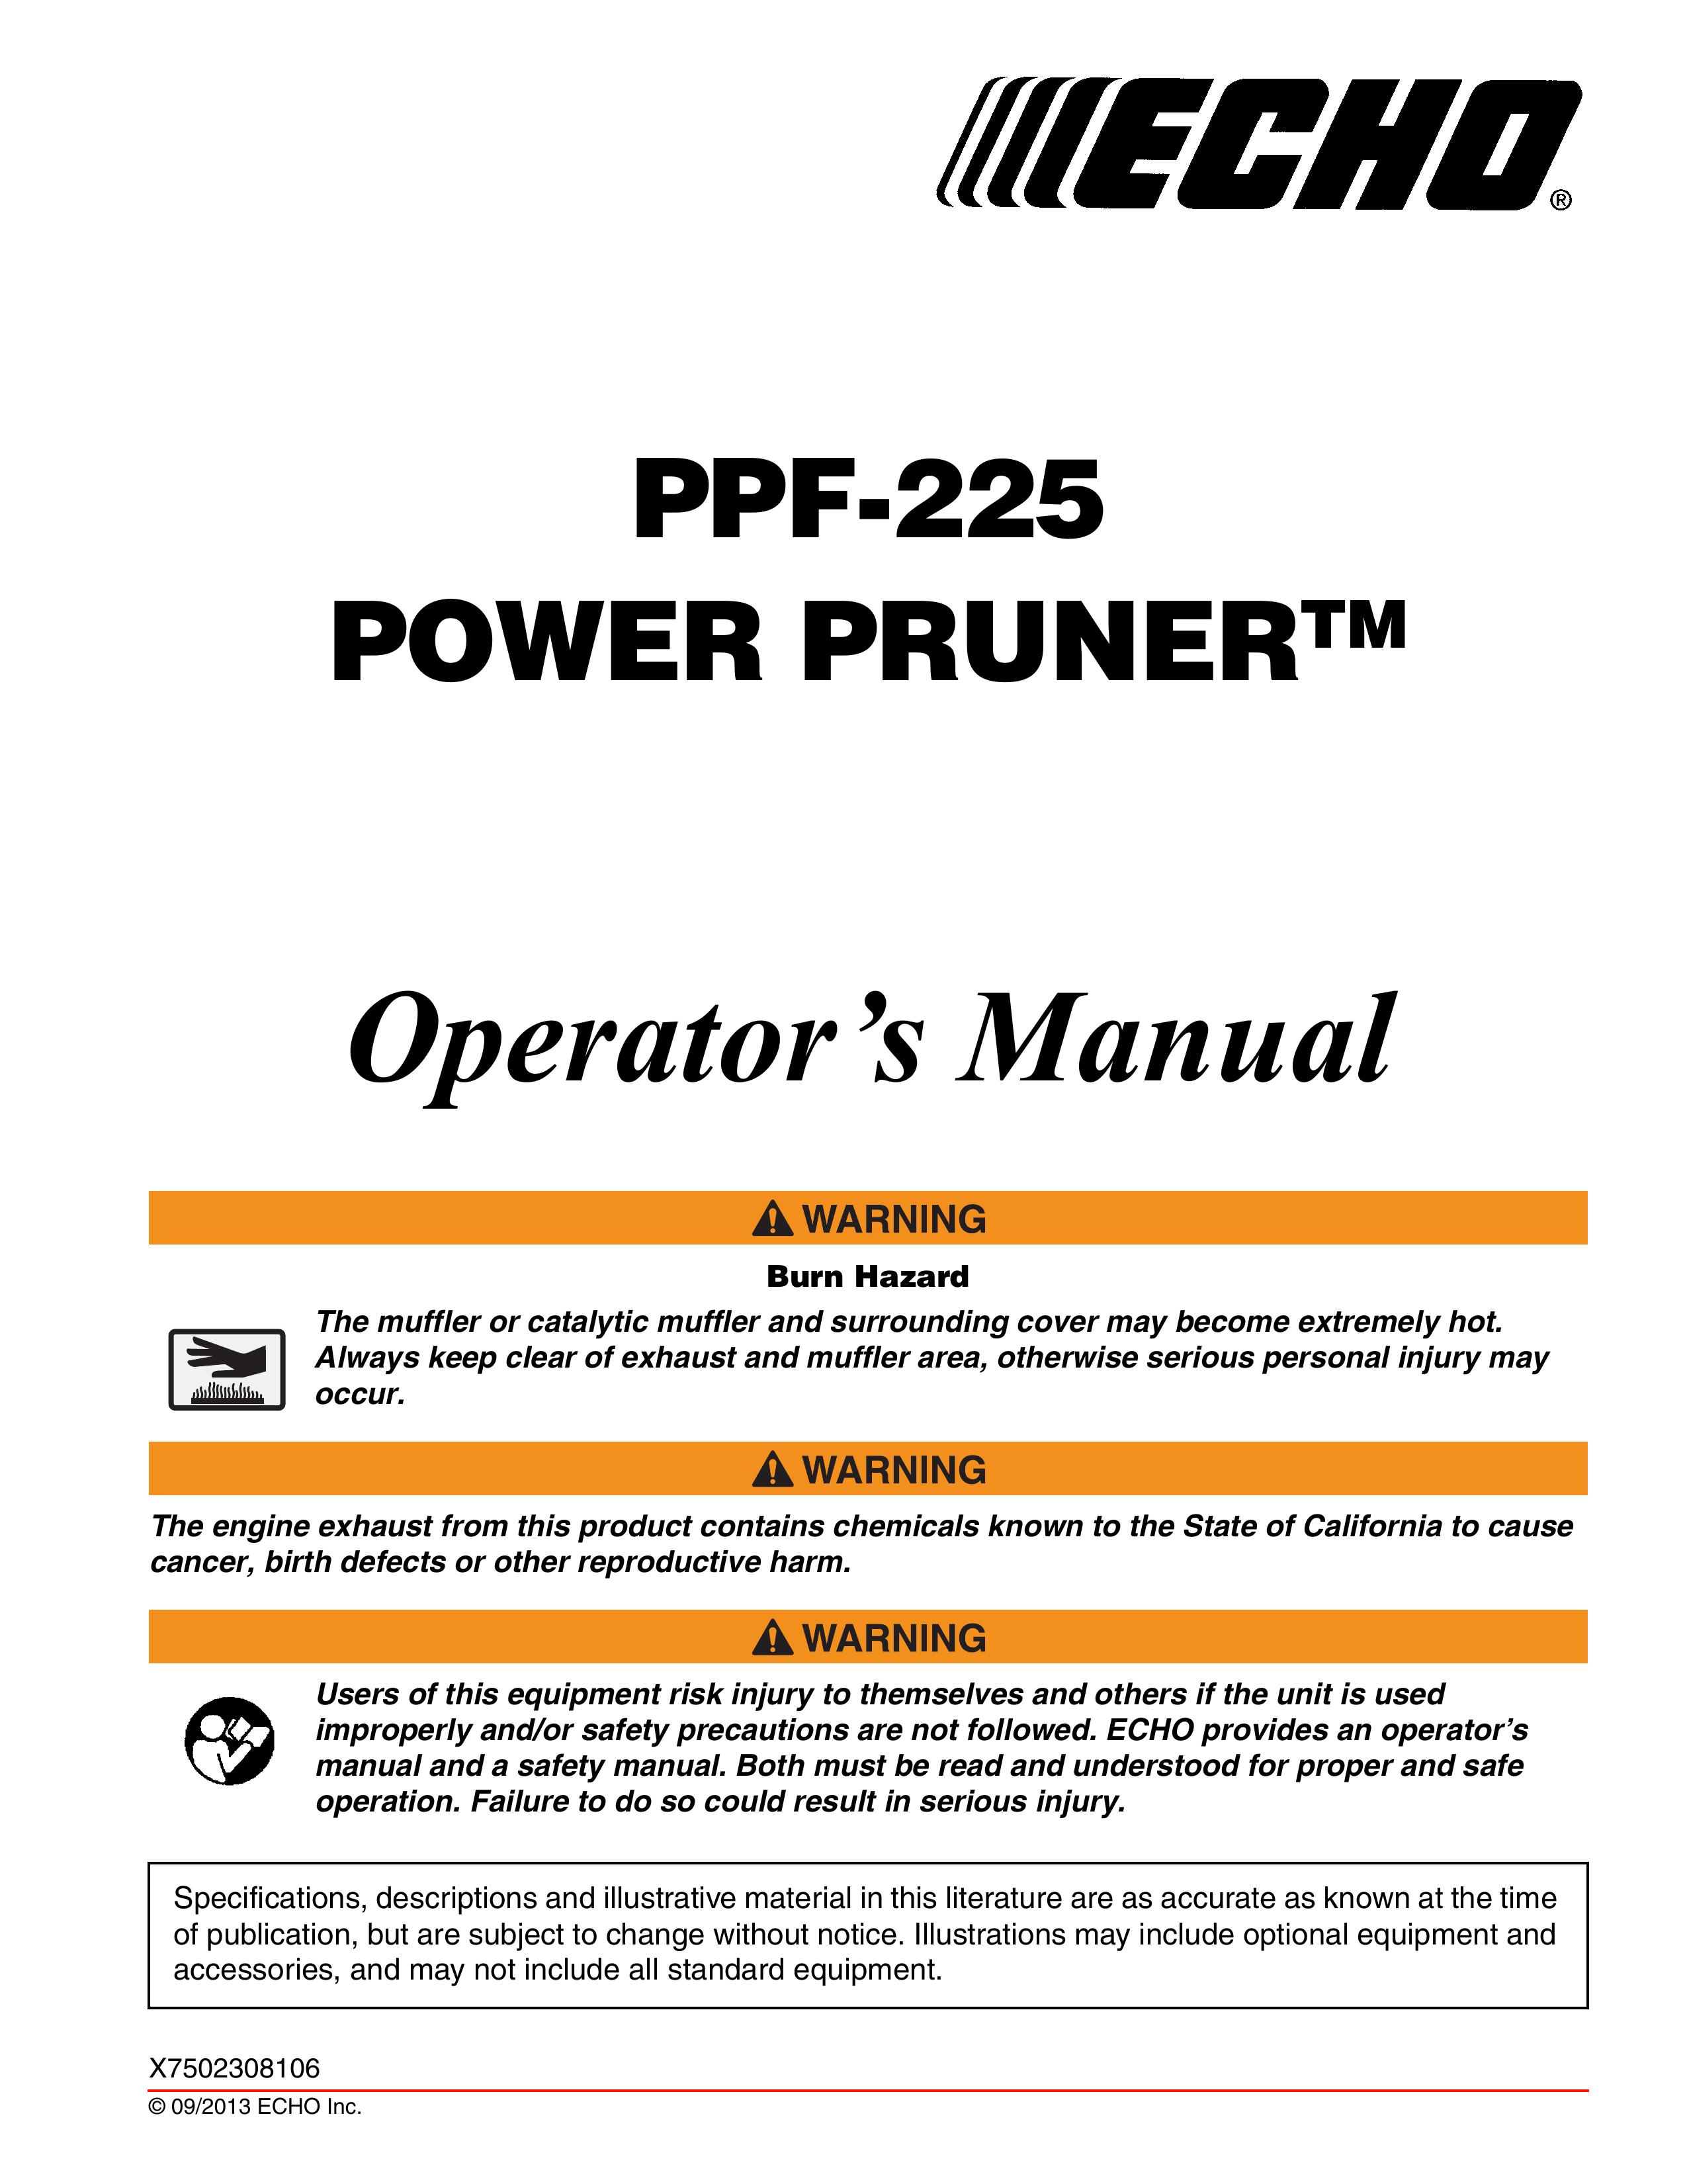 Echo PPF-225 Pole Saw User Manual